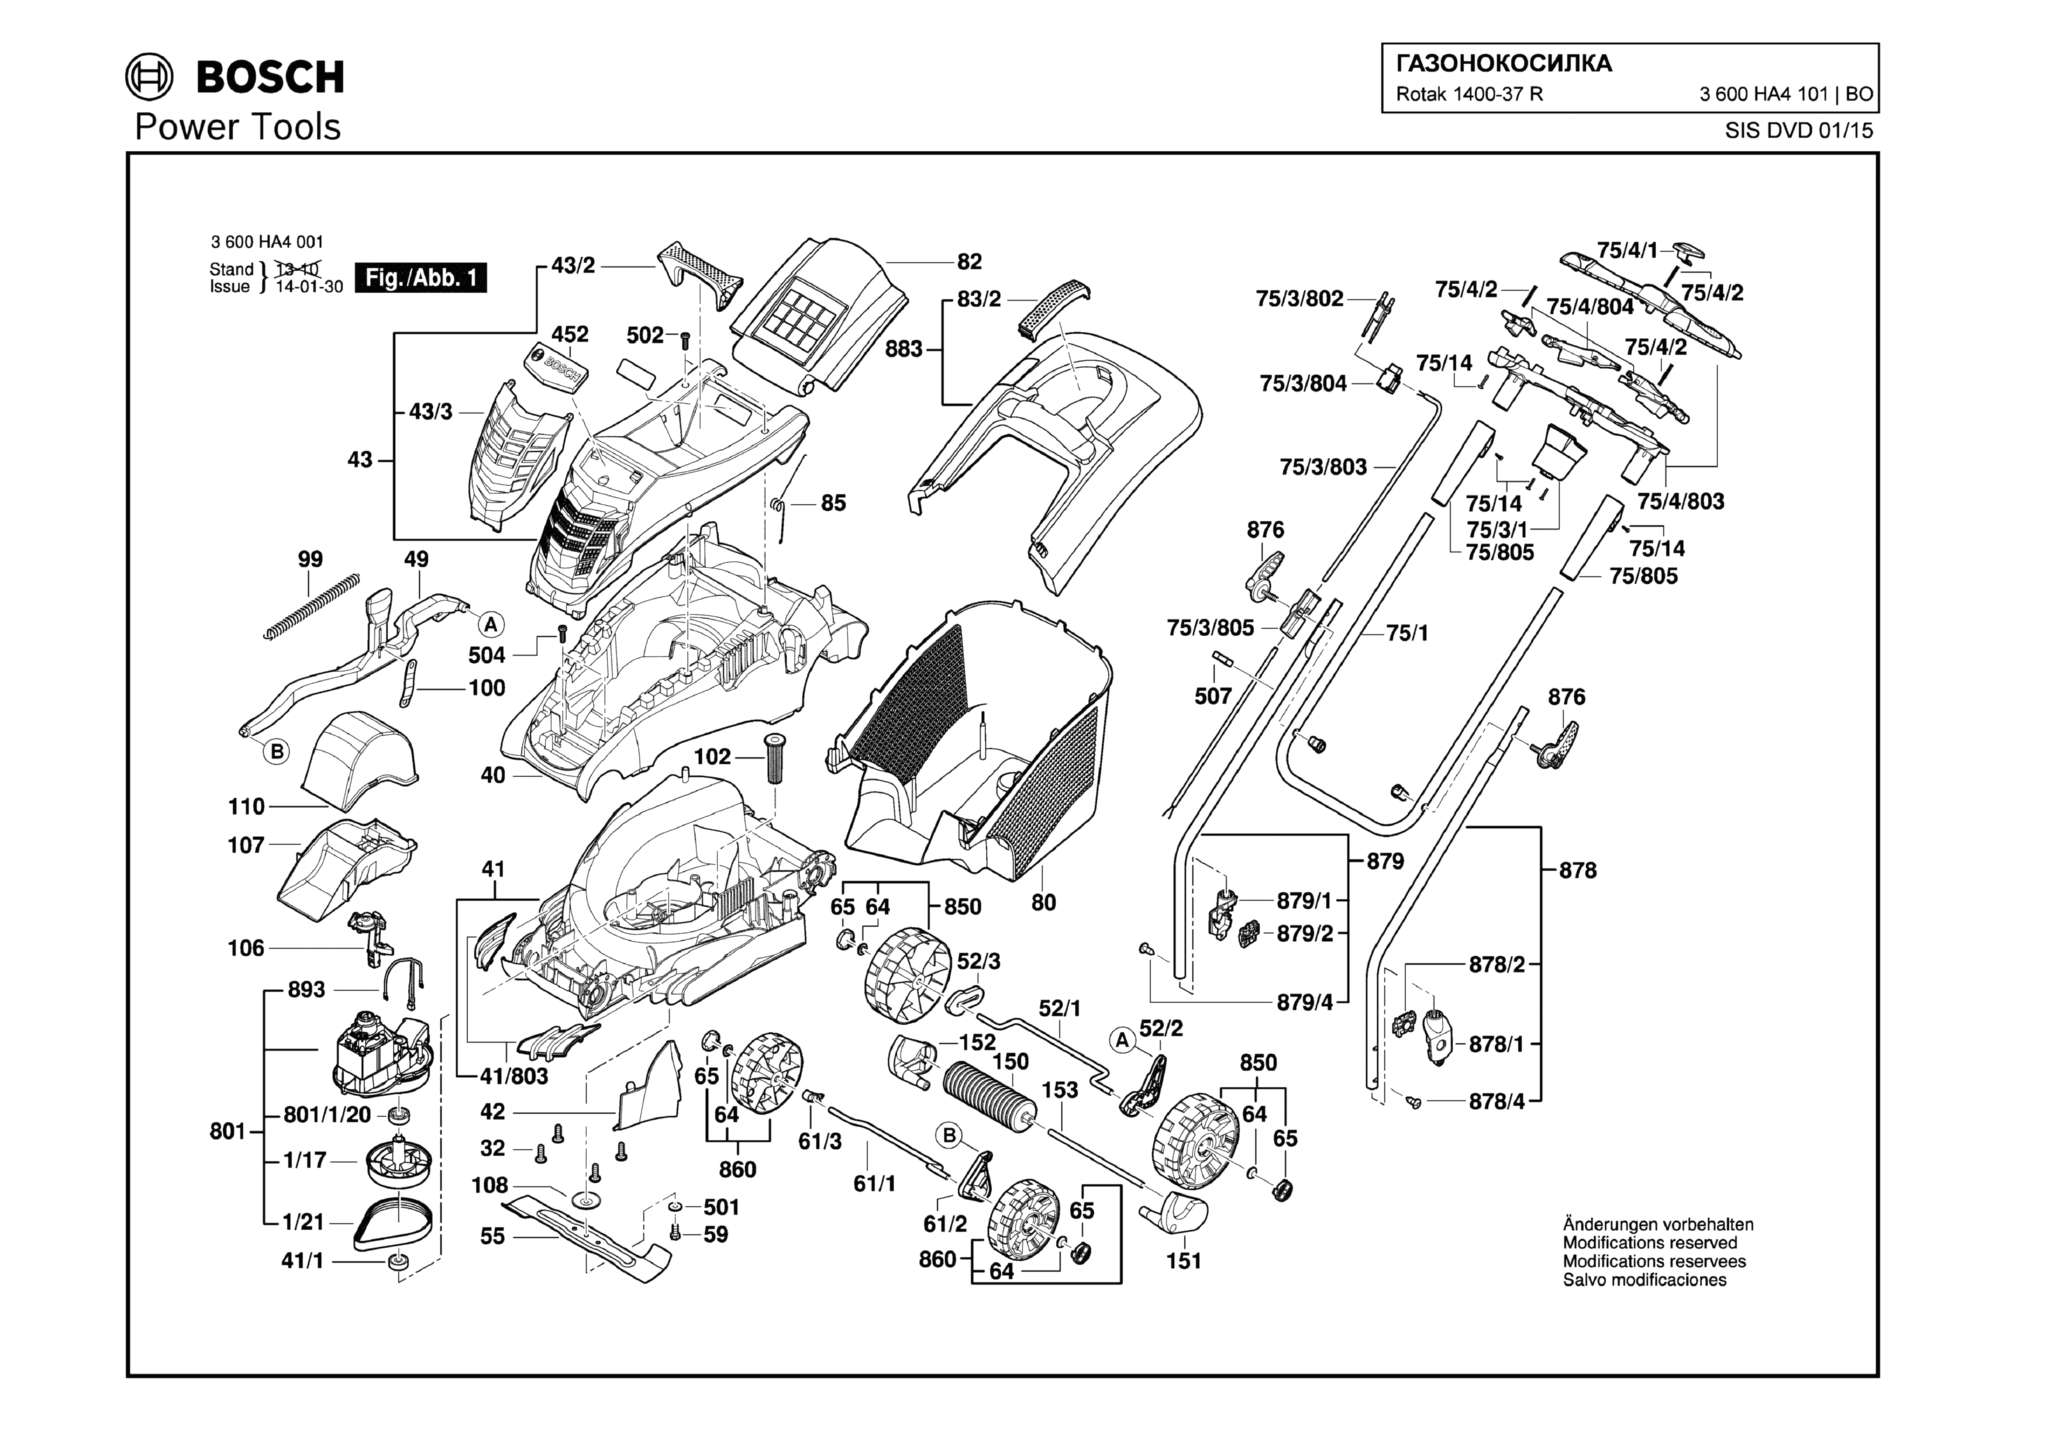 Запчасти, схема и деталировка Bosch ROTAK 1400-37 R (ТИП 3600HA4101)